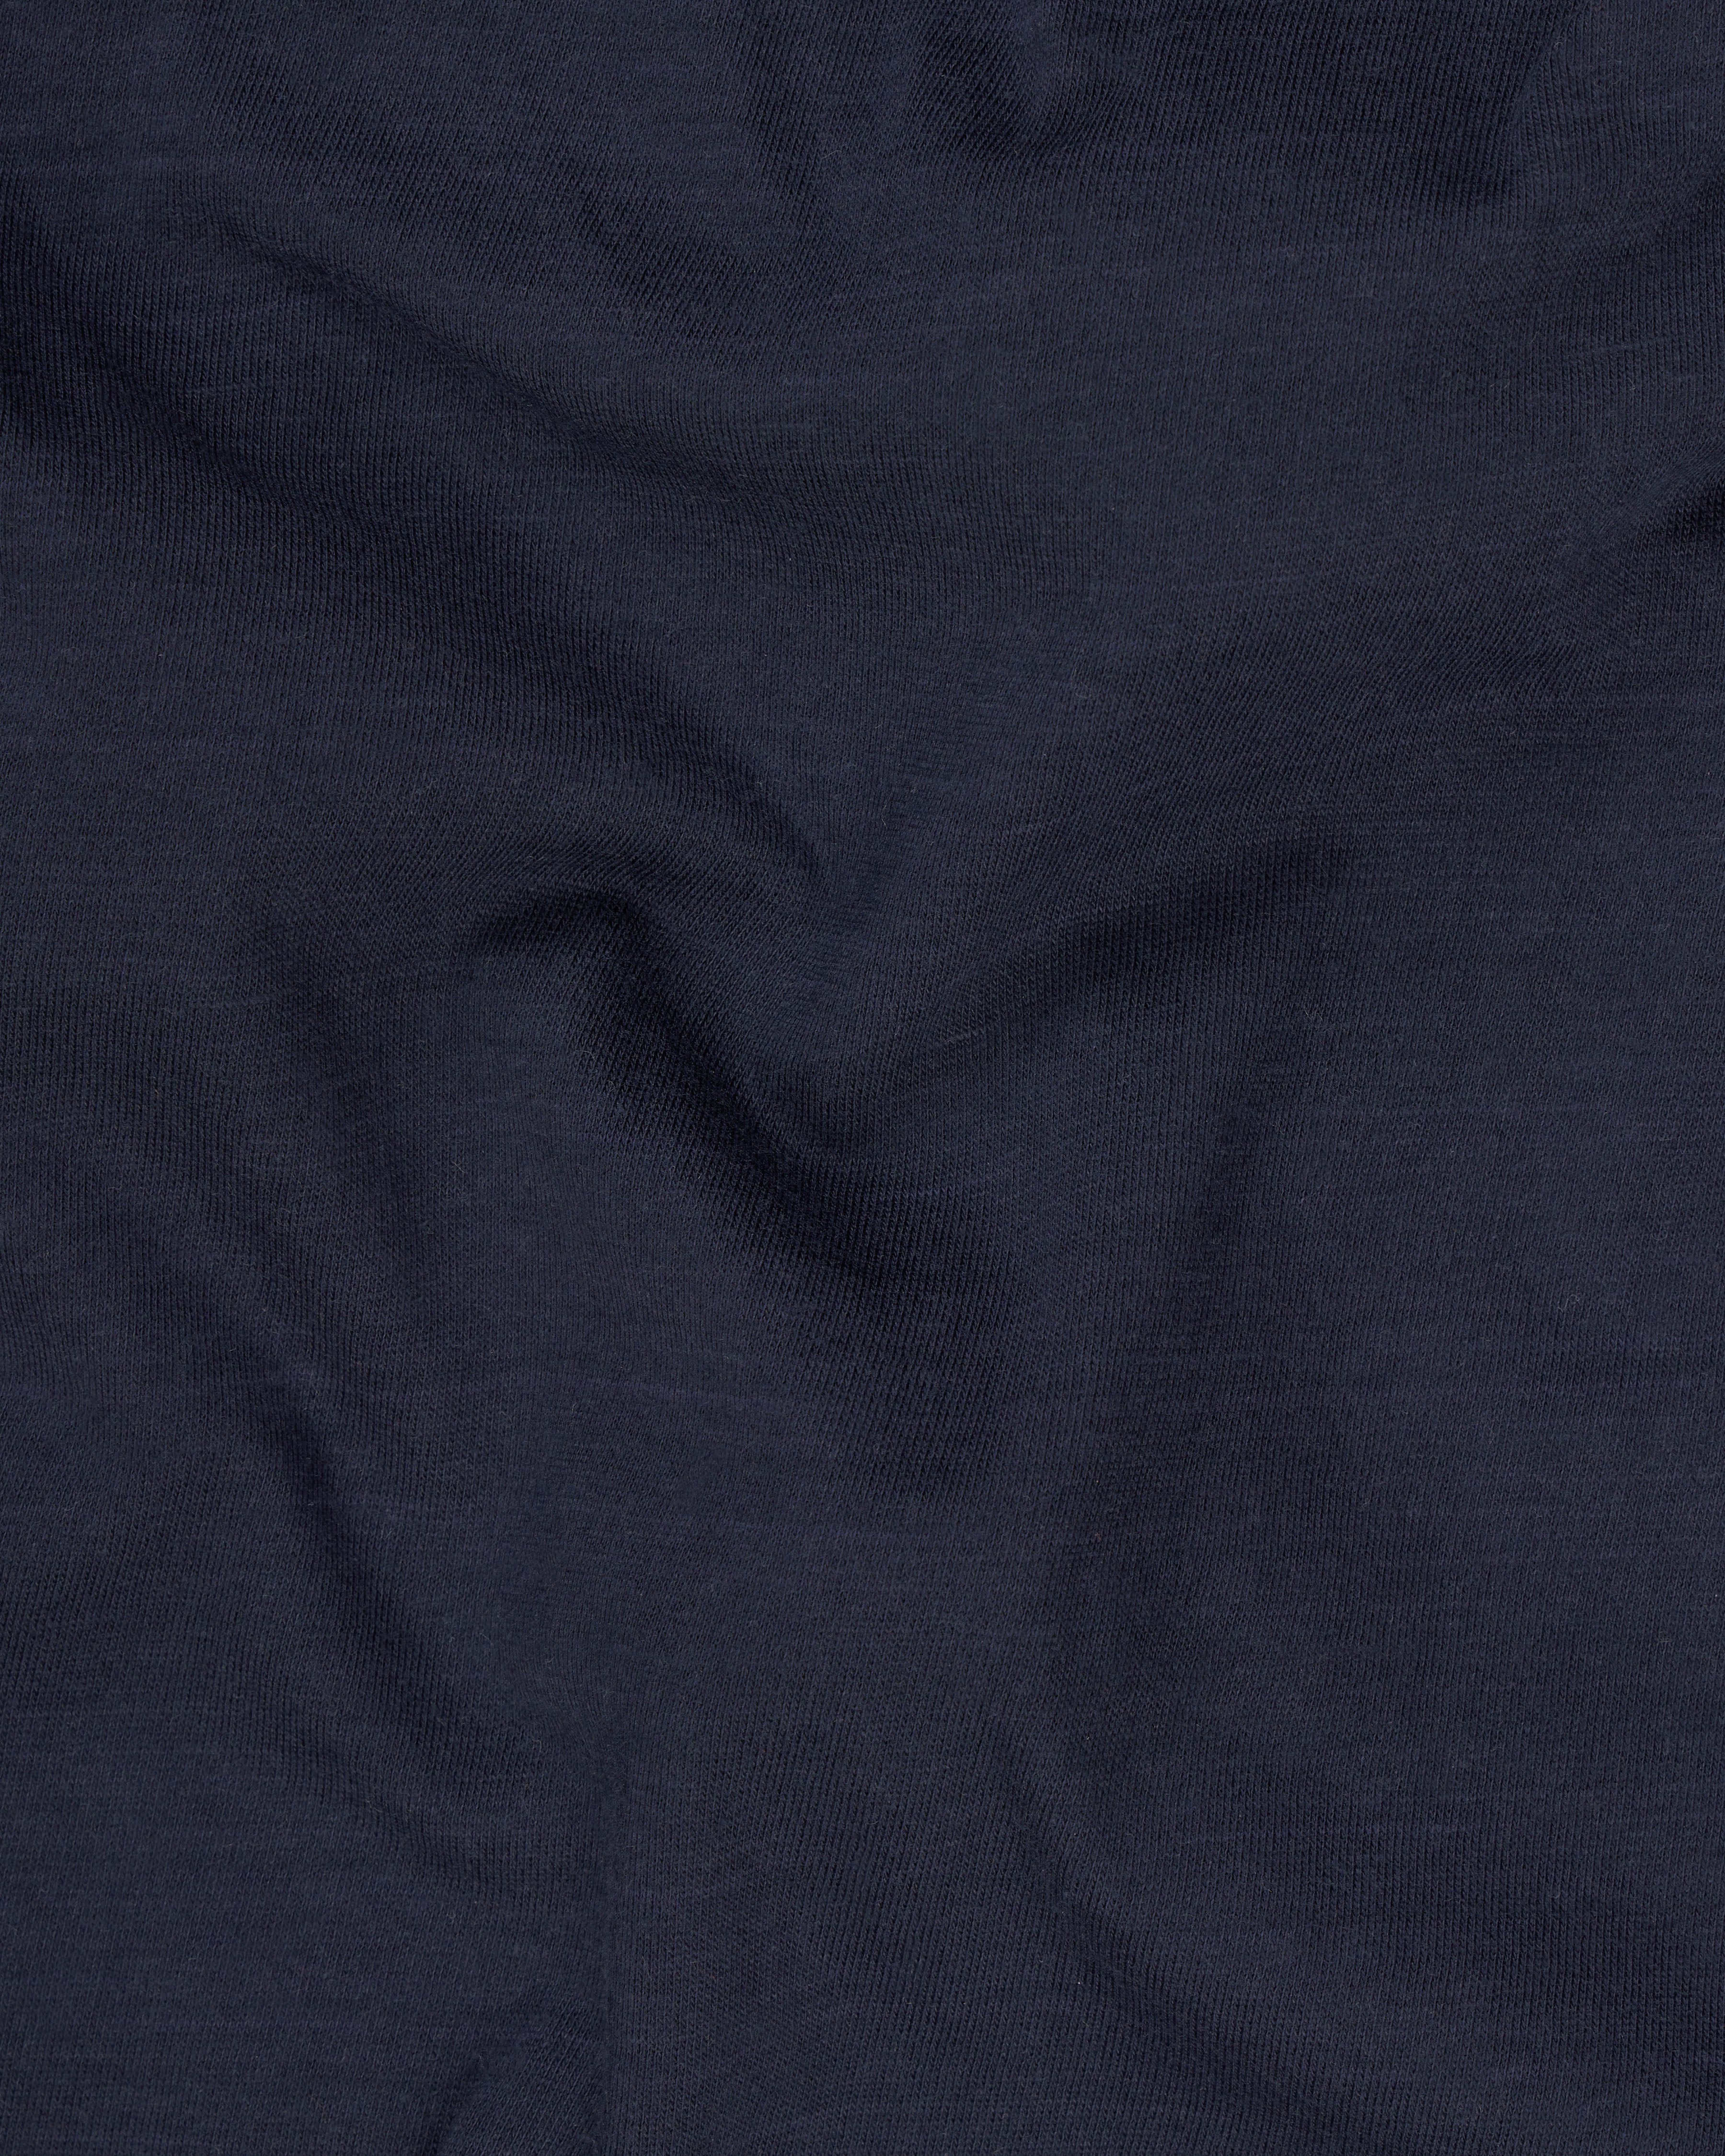 Baltic Navy Blue Premium Cotton Organic T-shirt TS658-S, TS658-M, TS658-L, TS658-XL, TS658-XXL